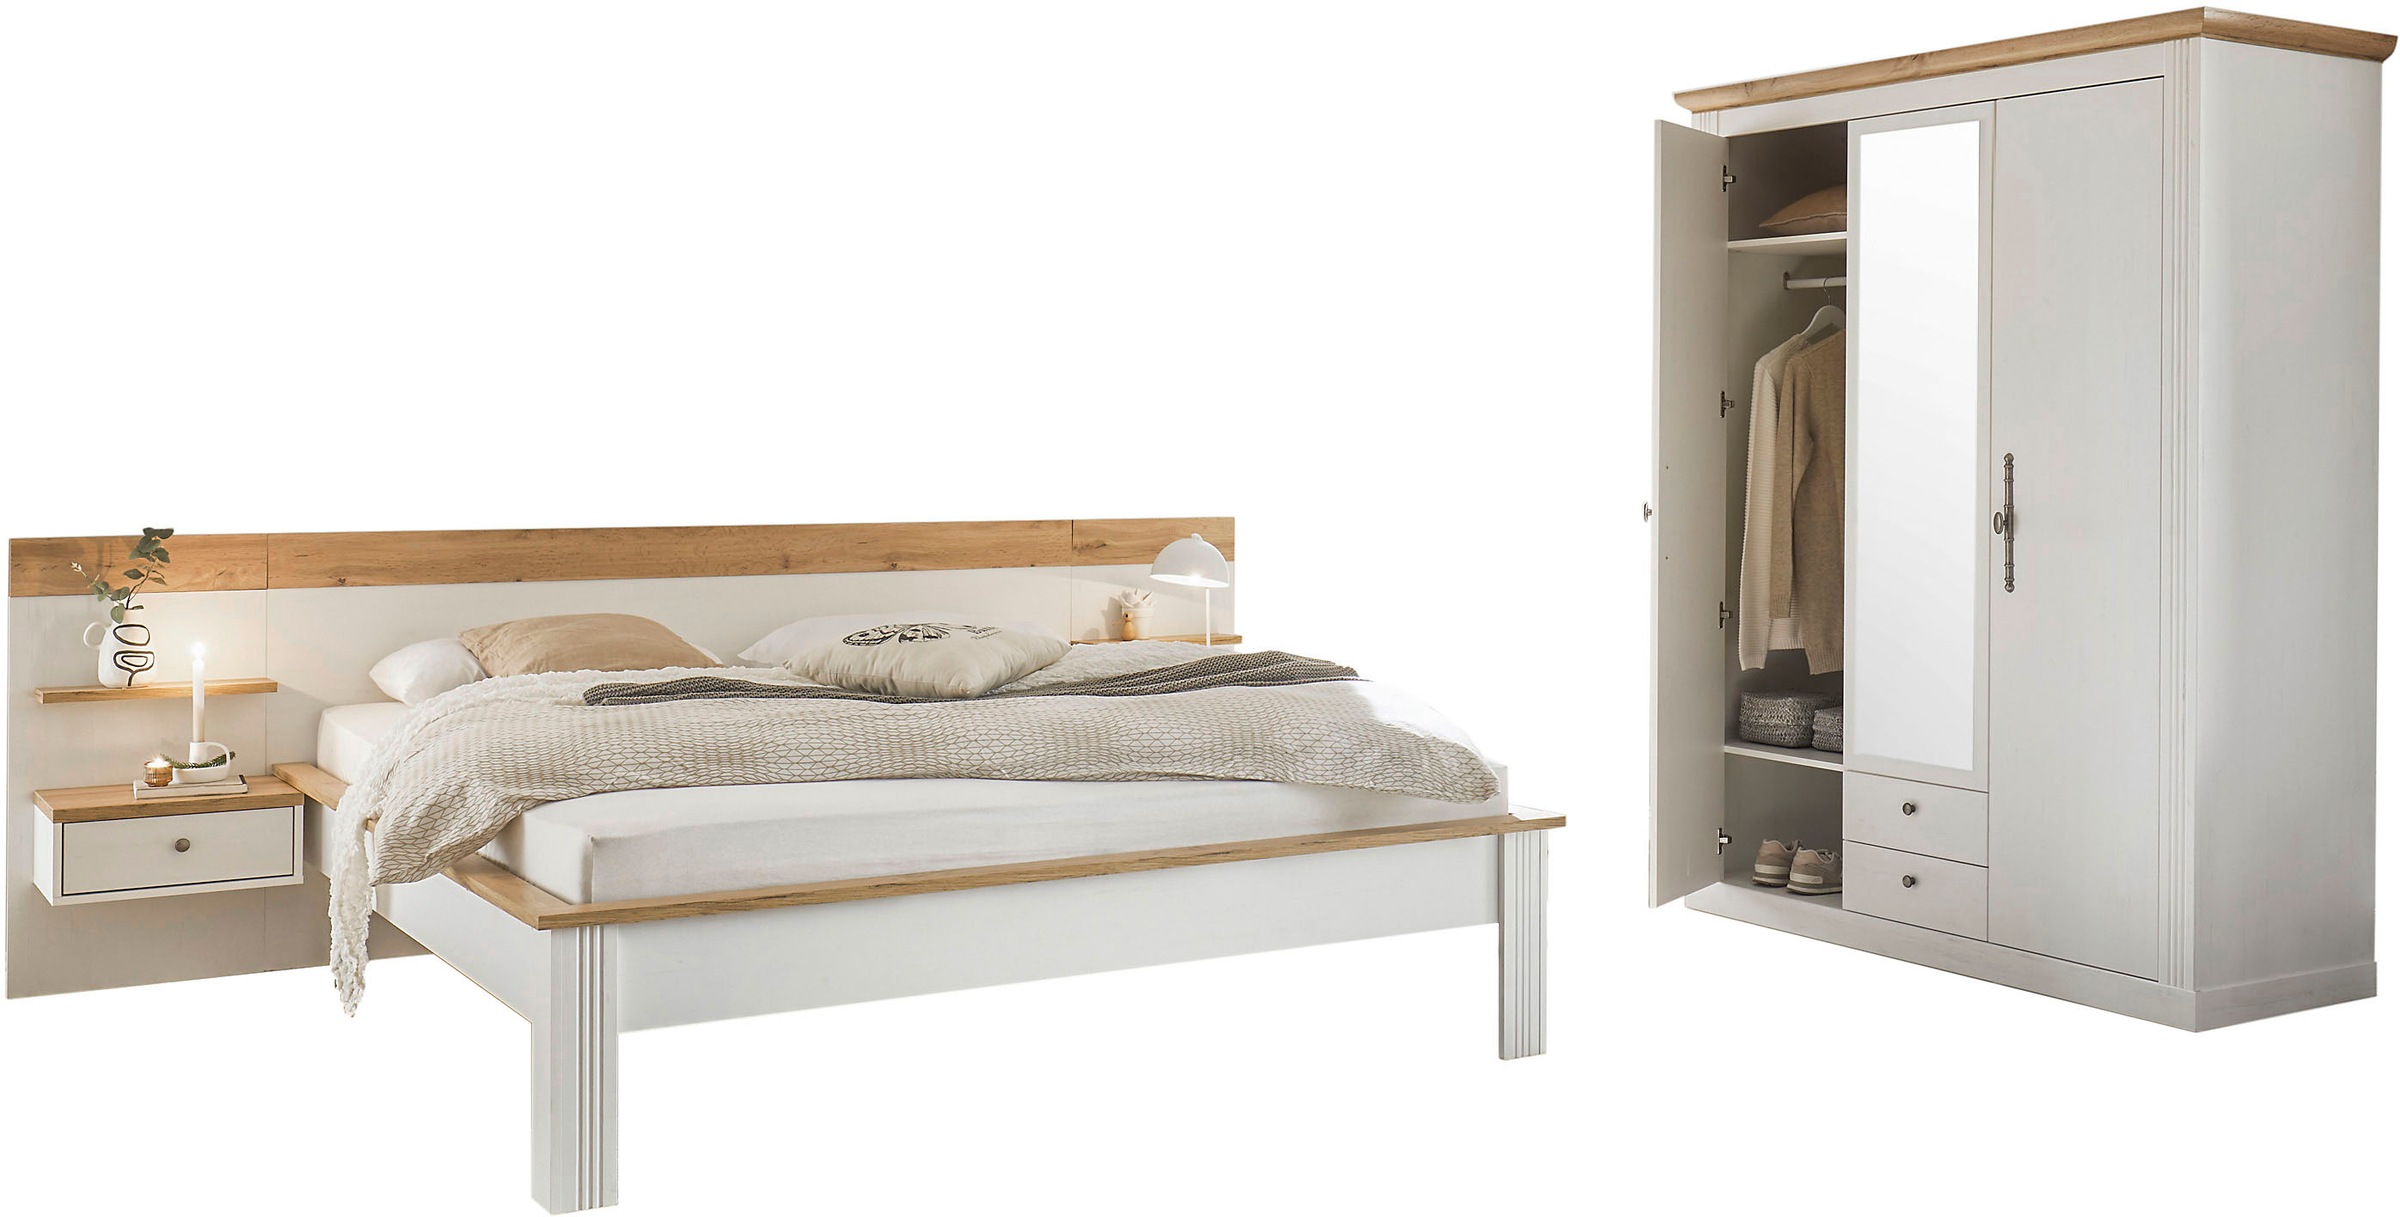 Home affaire Schlafzimmer-Set »Westminster«, beinhaltet 1 Bett, Kleiderschrank 3-türig und 2 Wandpaneele